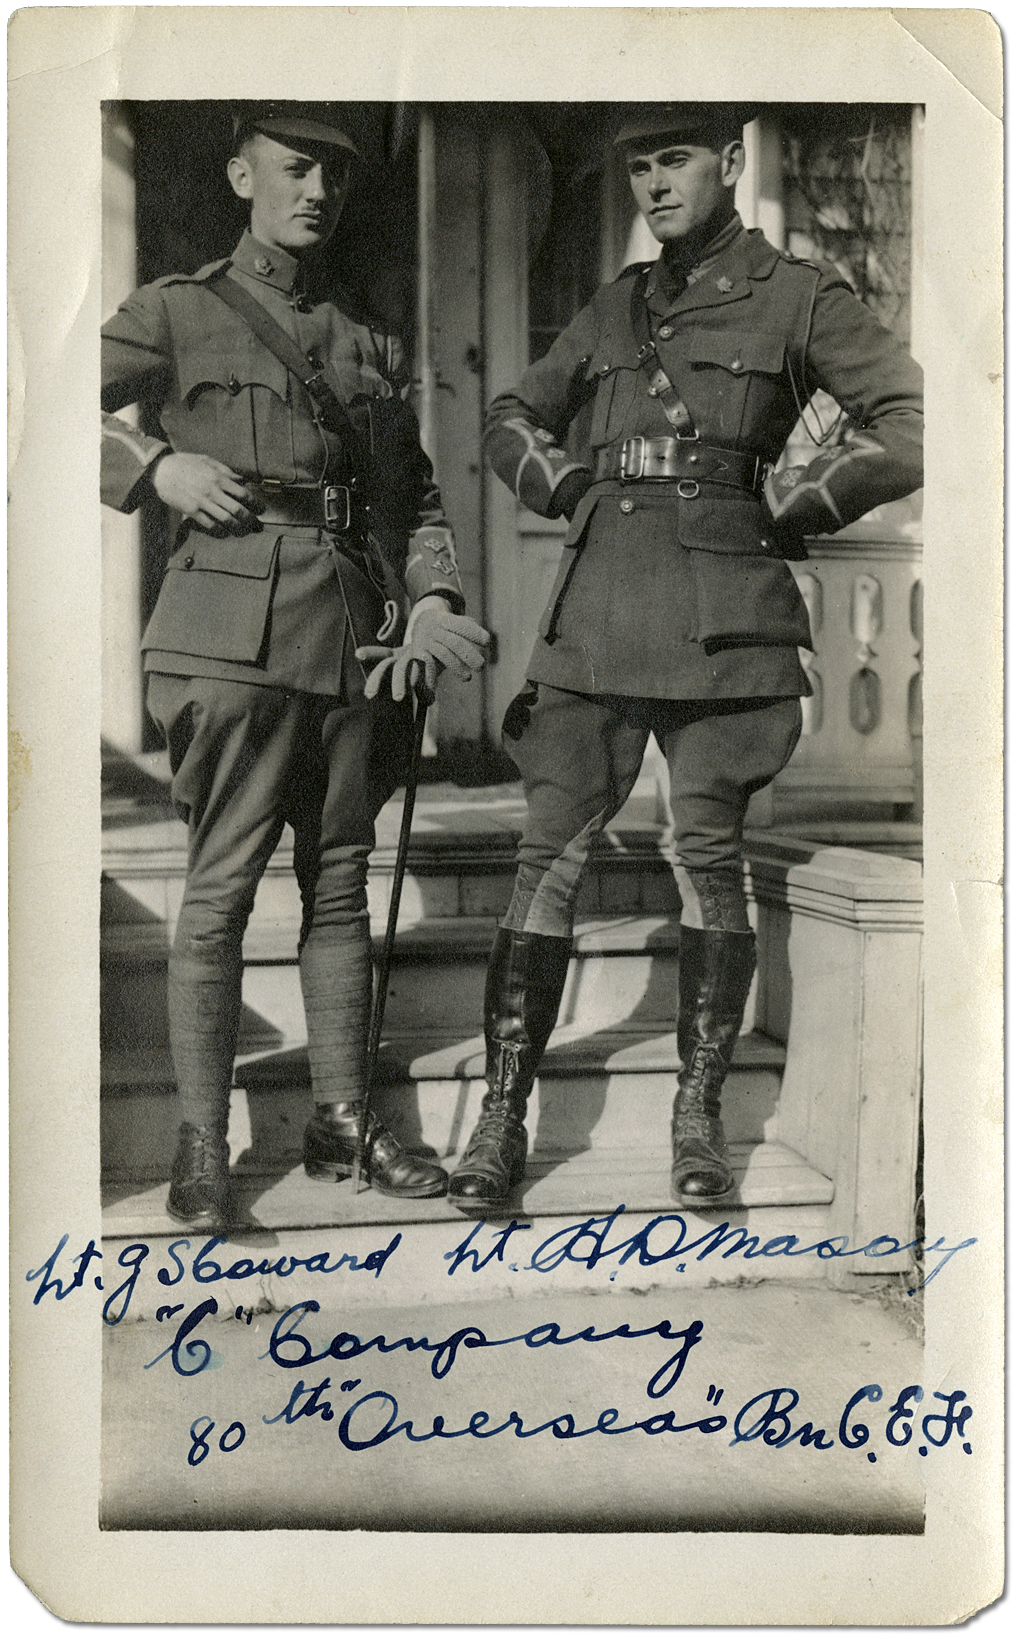 Lieutenant GS Coward et le lieutenant Harry D. Mason [à droite], la compagnie «C», 80th Overseas Battallion, Corps expéditionnaire canadien (CEC), [vers 1916